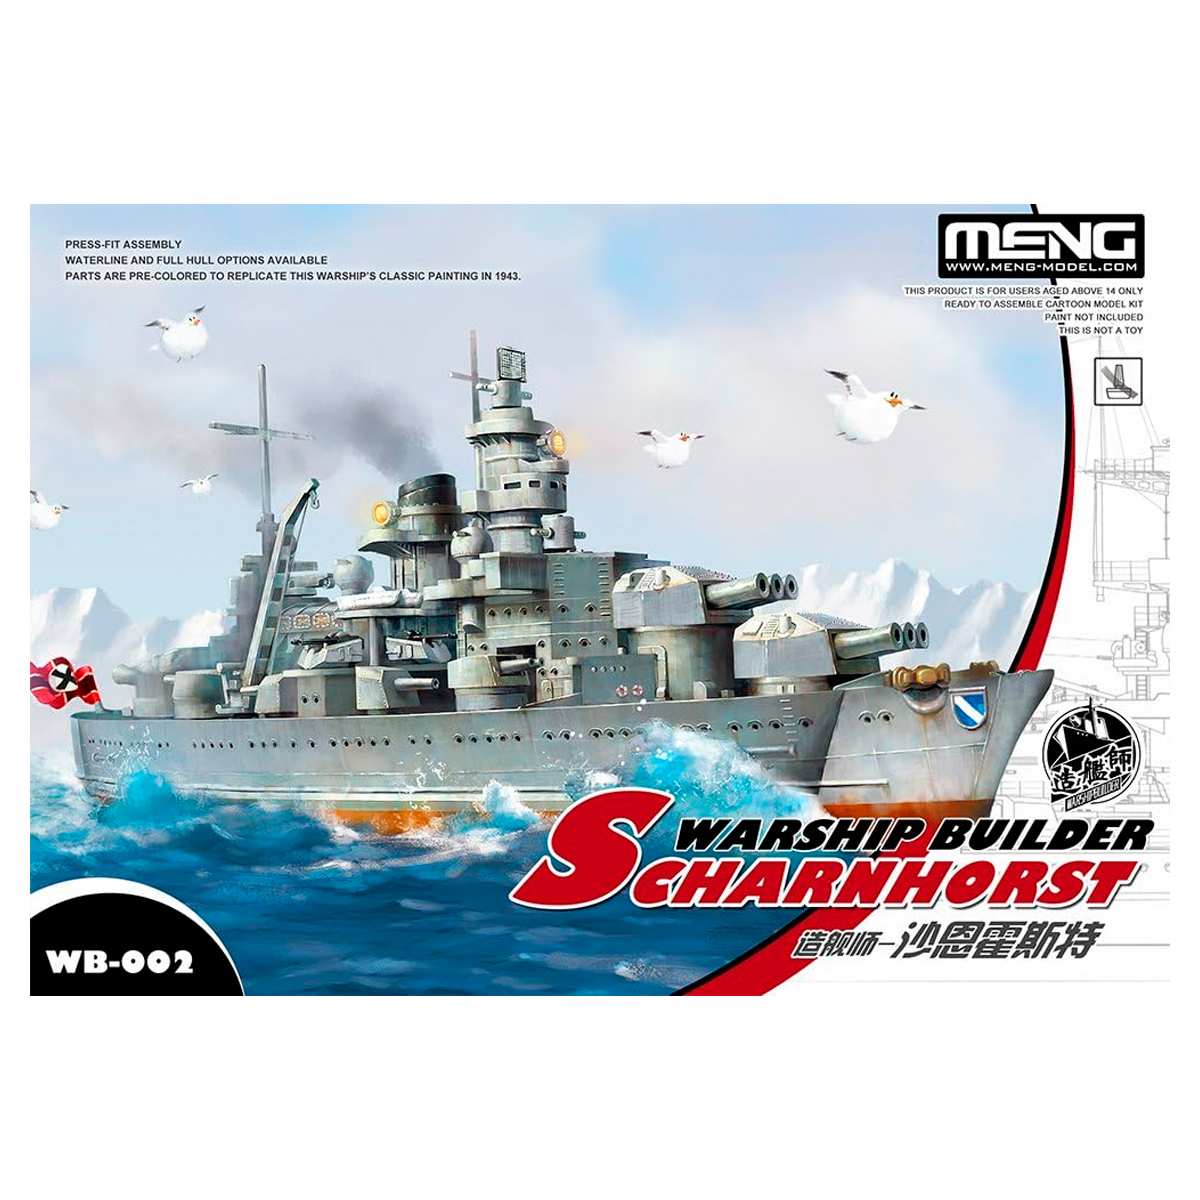 Warship builder Scharnhorst (CARTOON MODEL)